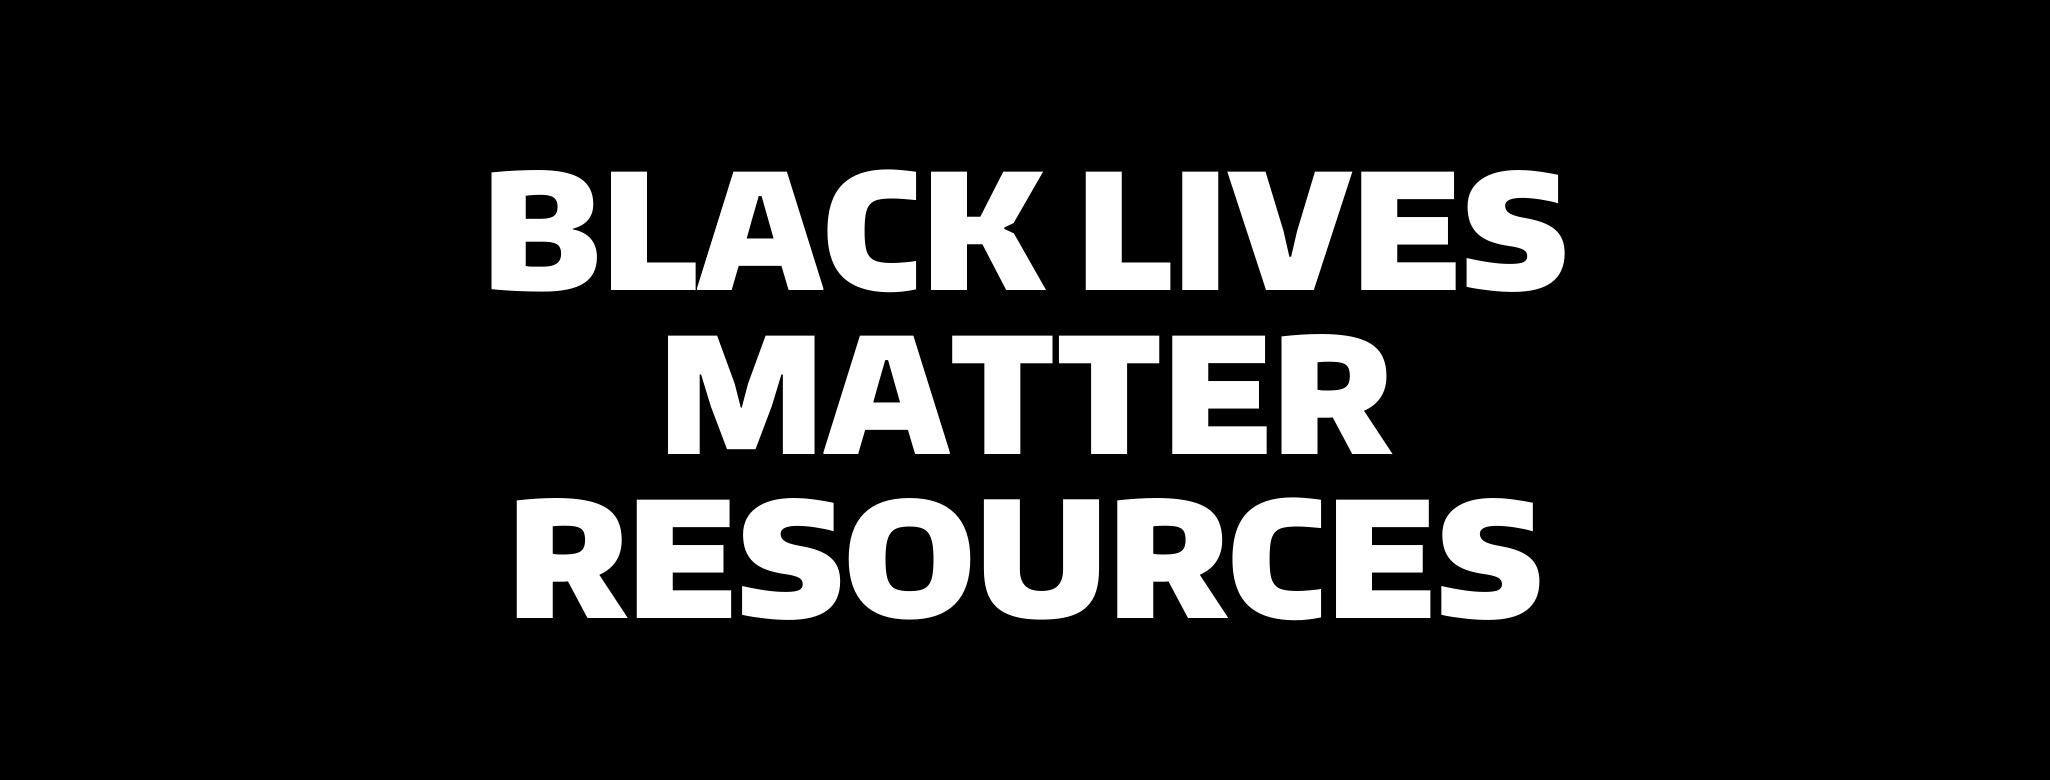 Black Lives Matter resources